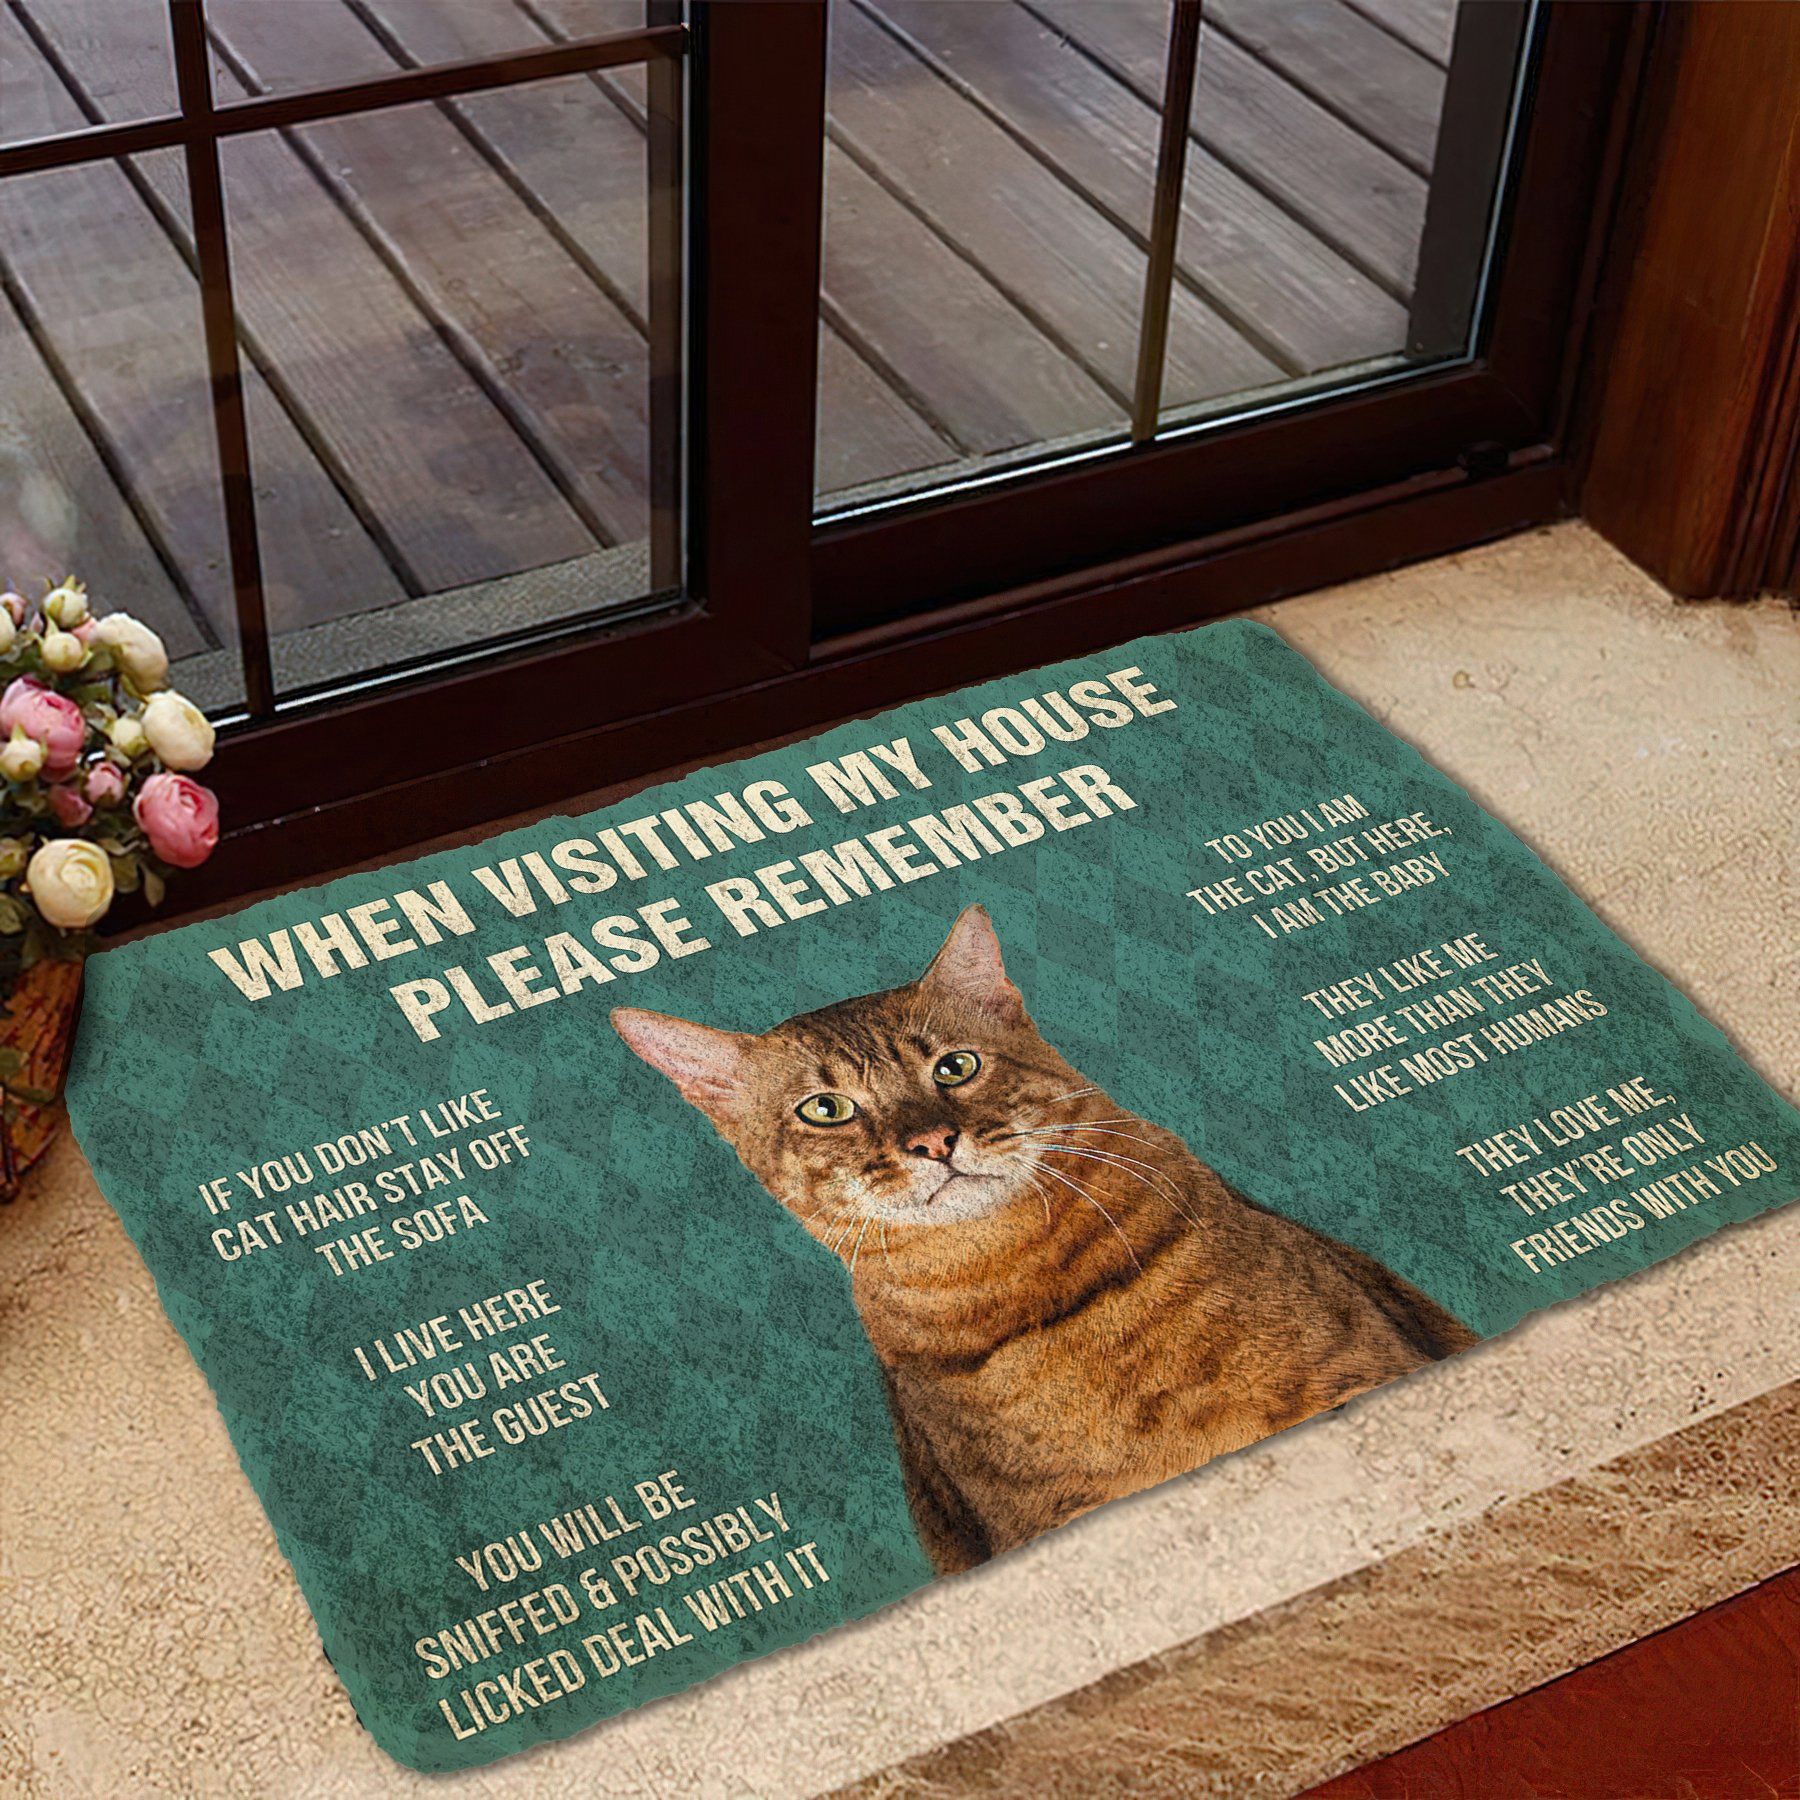 Gearhumans 3D Please Remember Toyger Cat House Rules Custom Doormat GS10052111 Doormat 